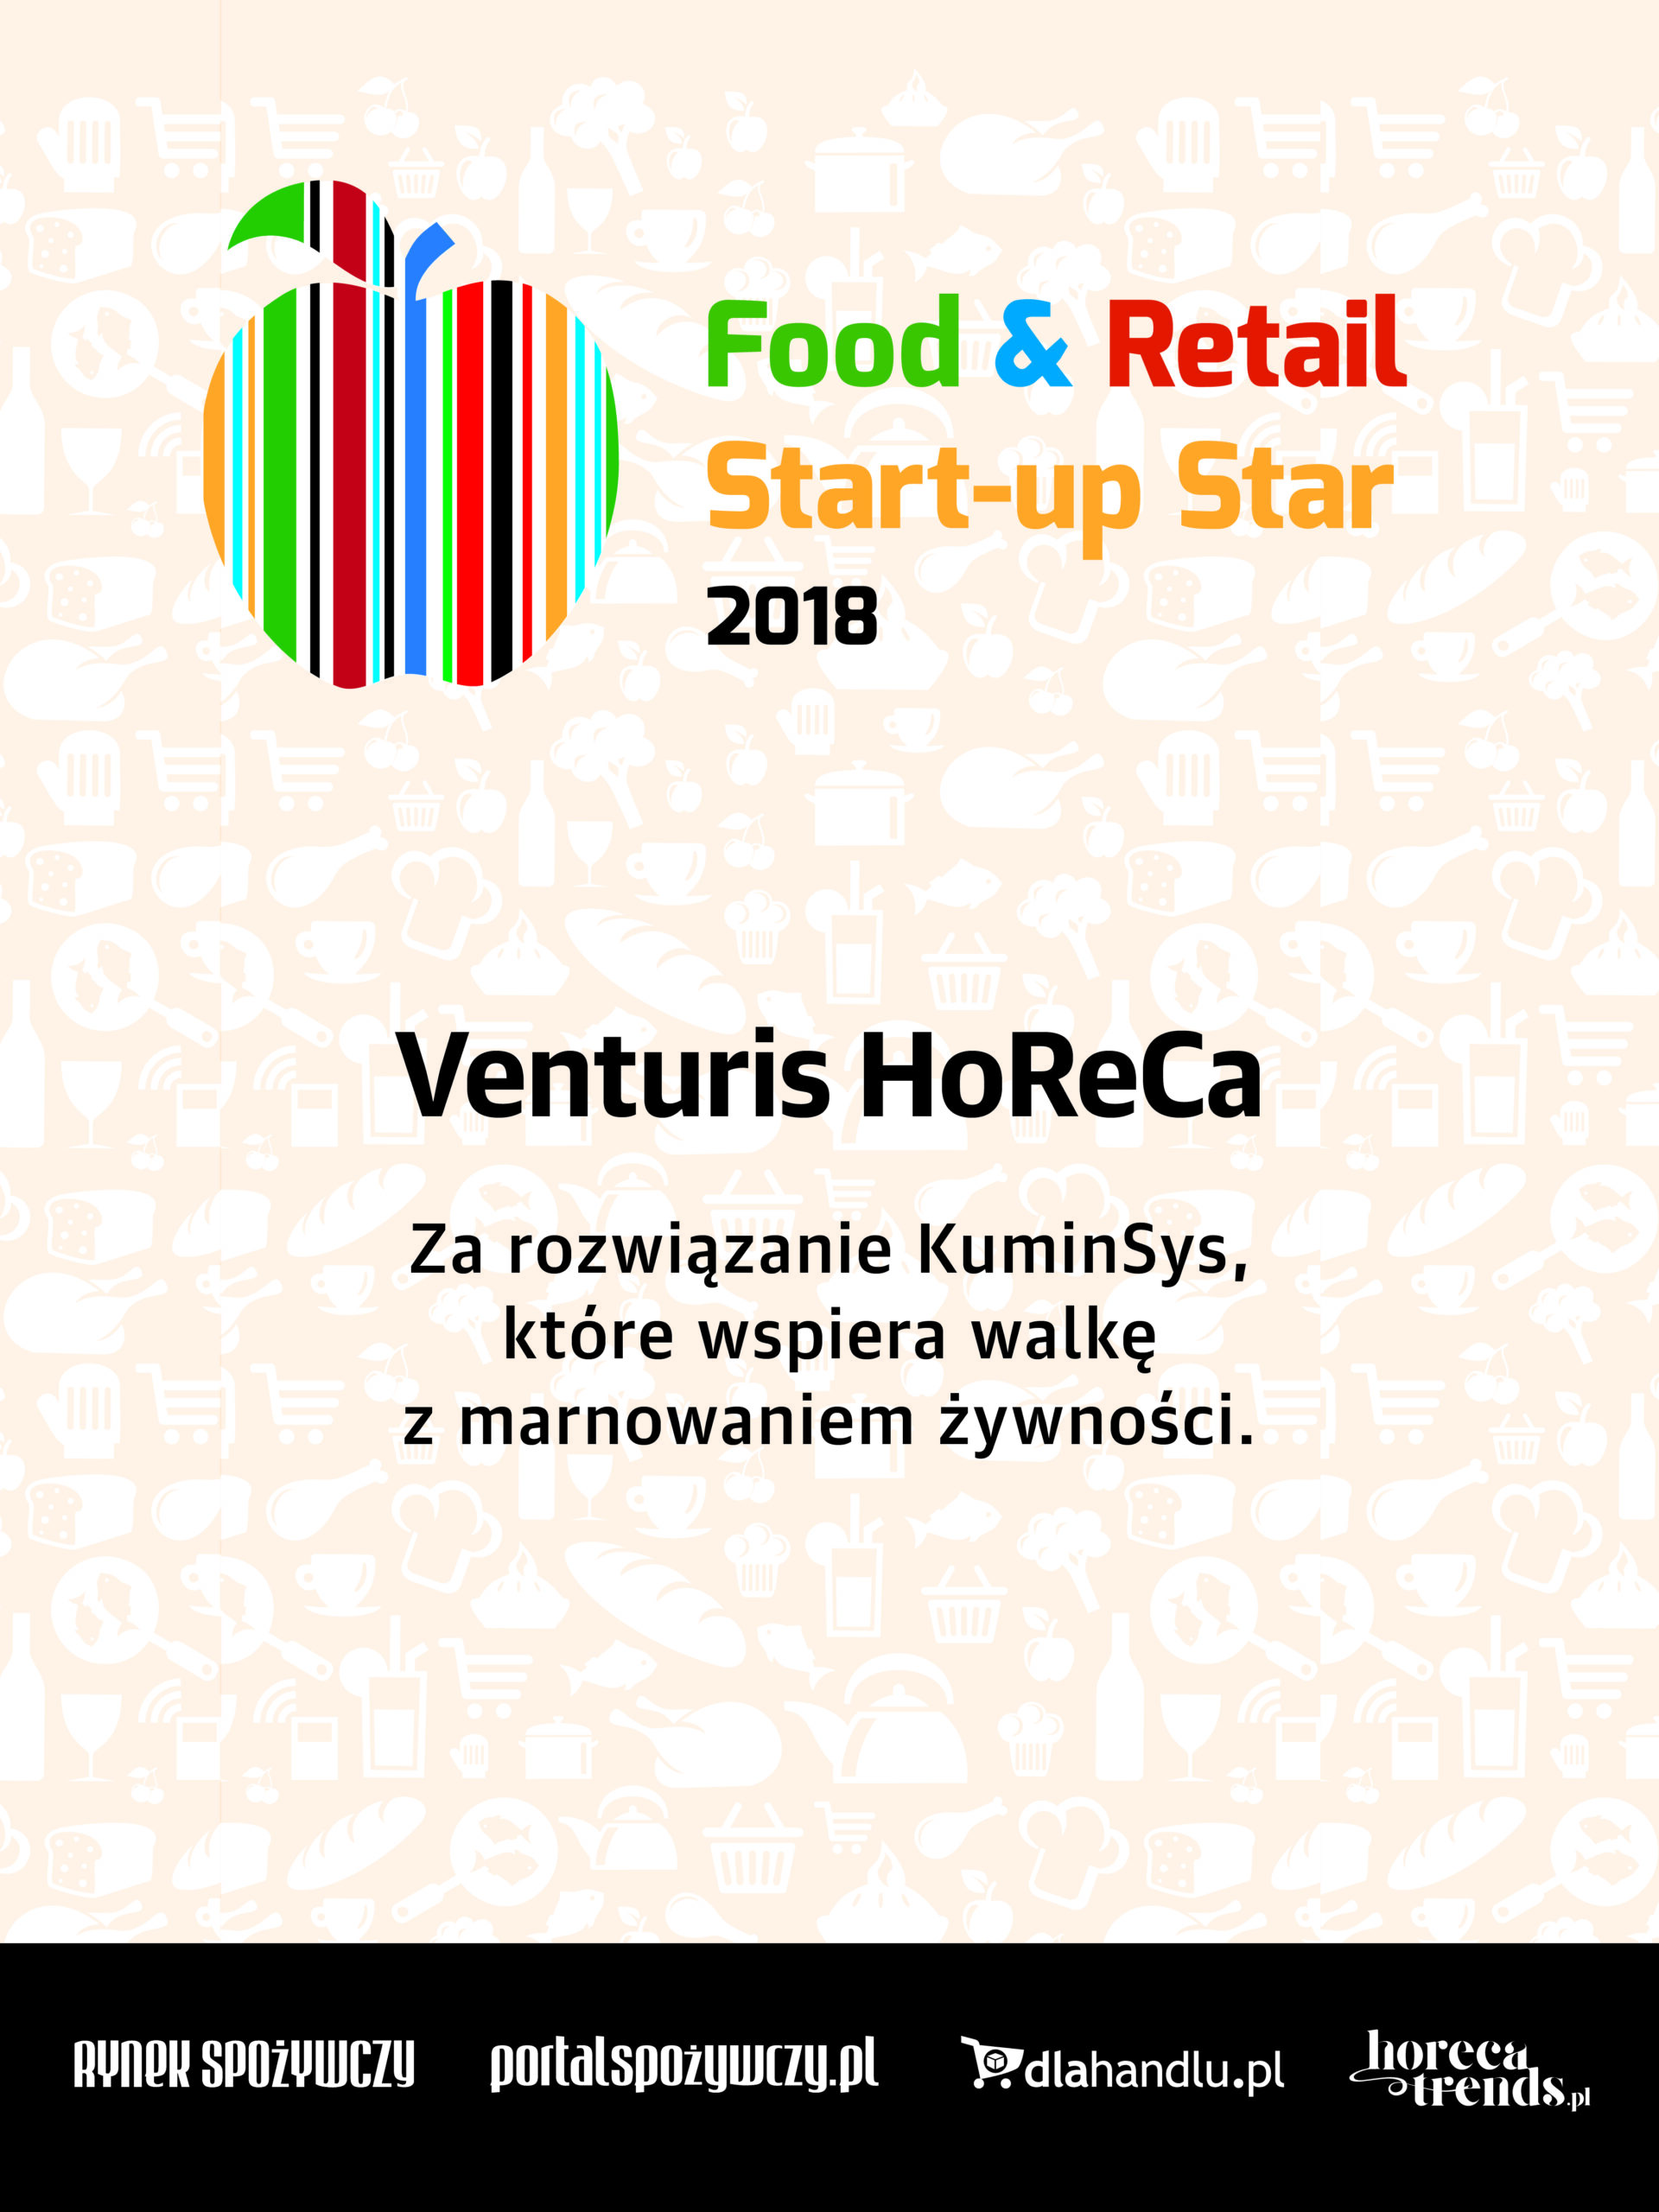 Zdobyliśmy wyróżnienie w konkursie Food&Retail Start-up Star 2018!!